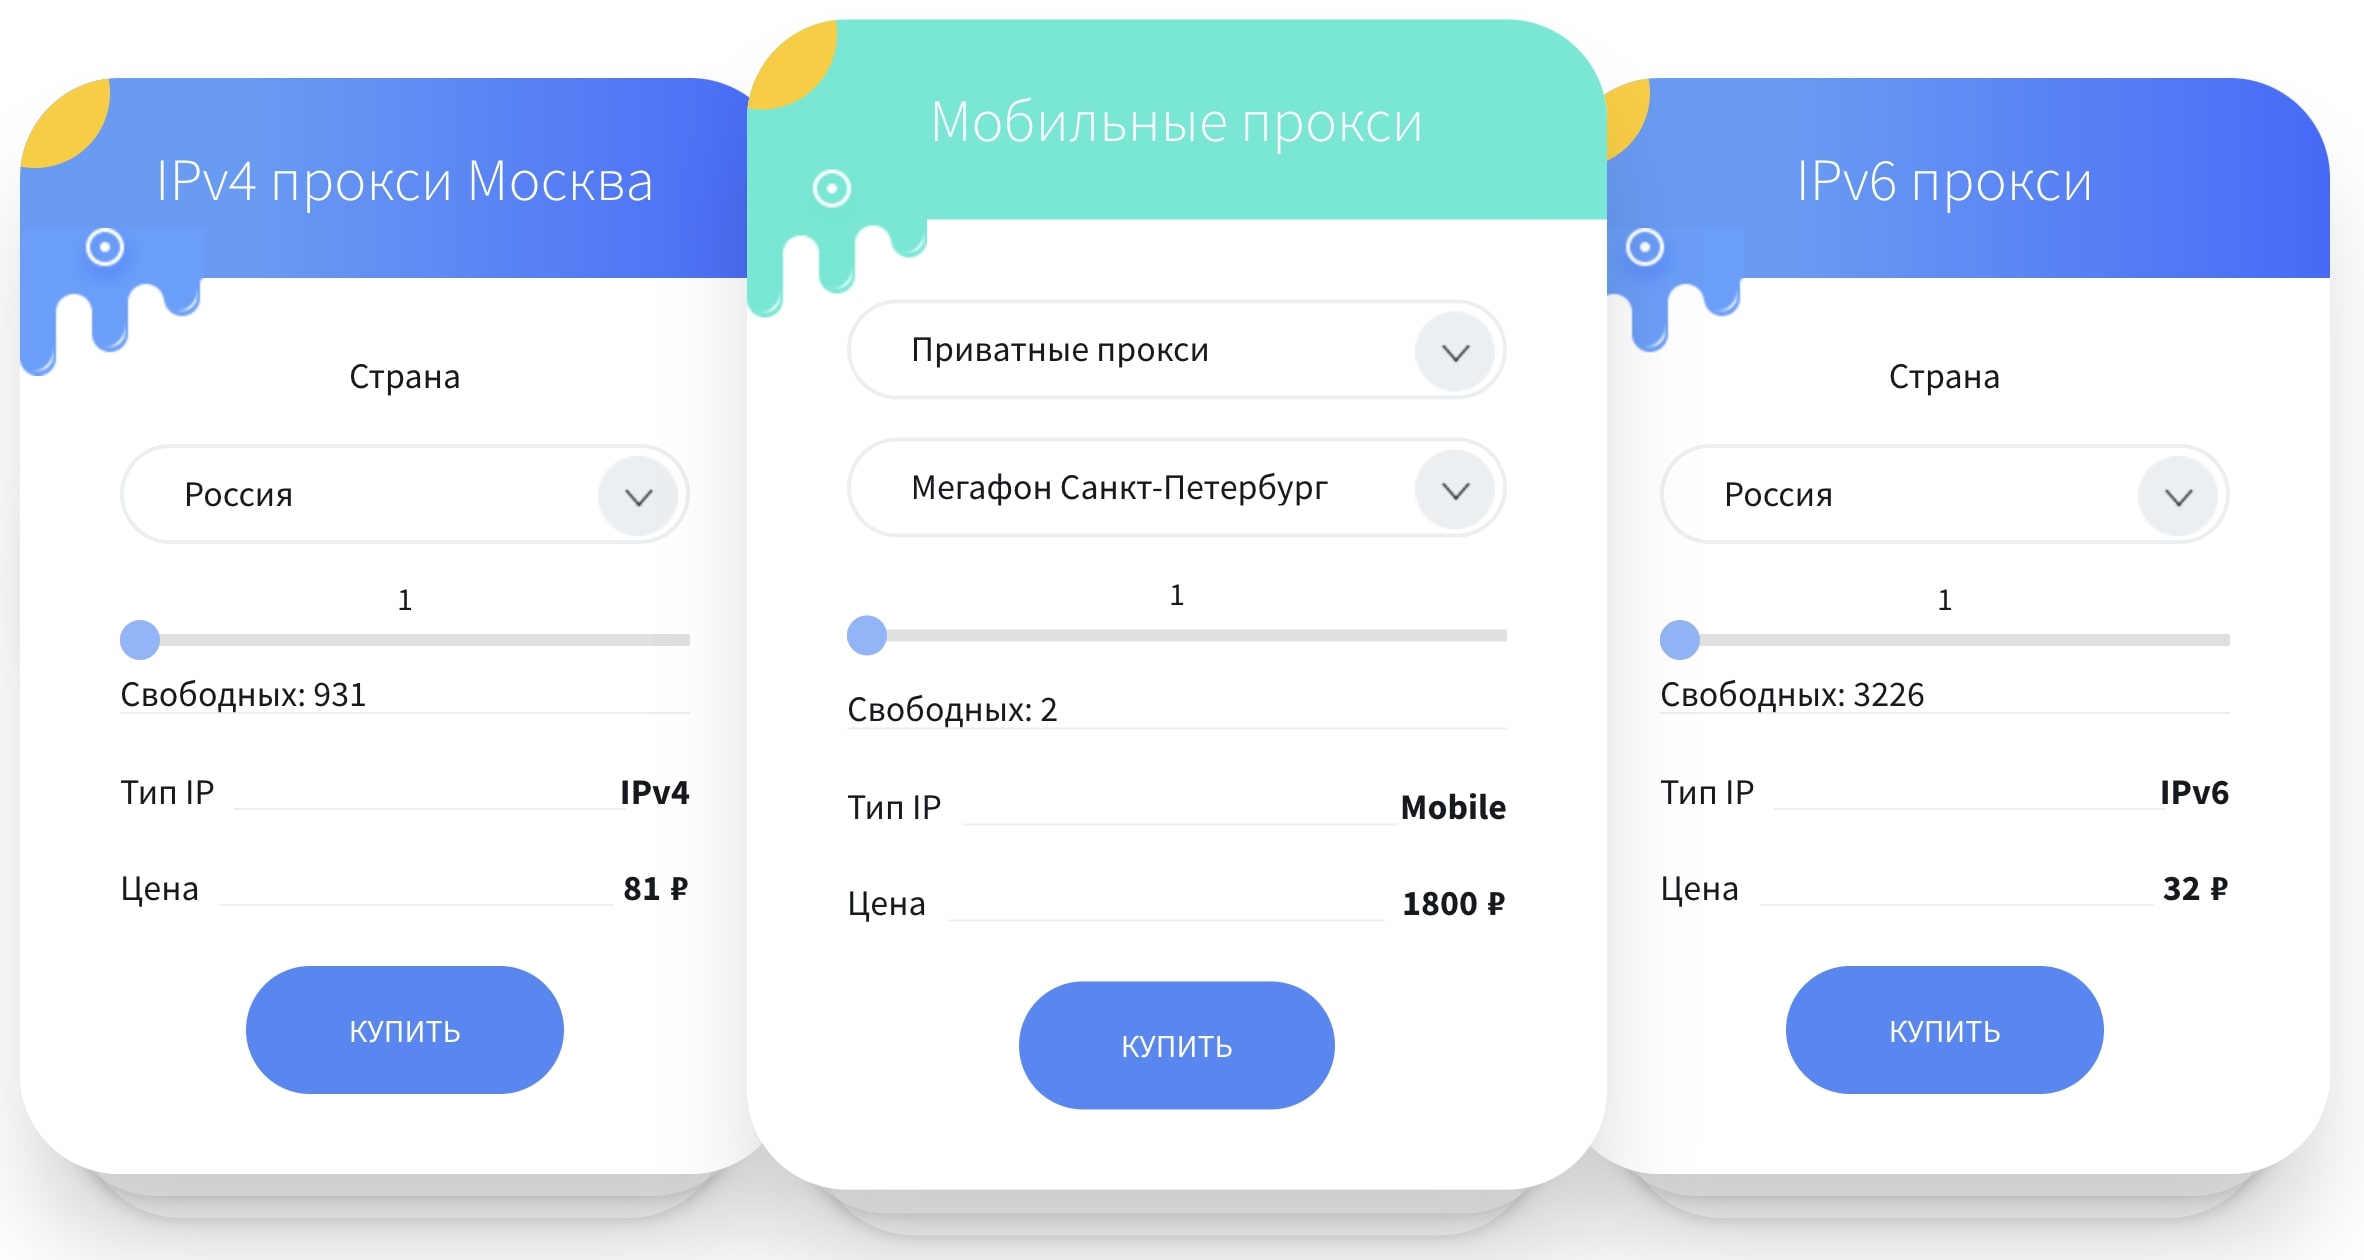 Прокси украина mobilnye proxy kupit ru